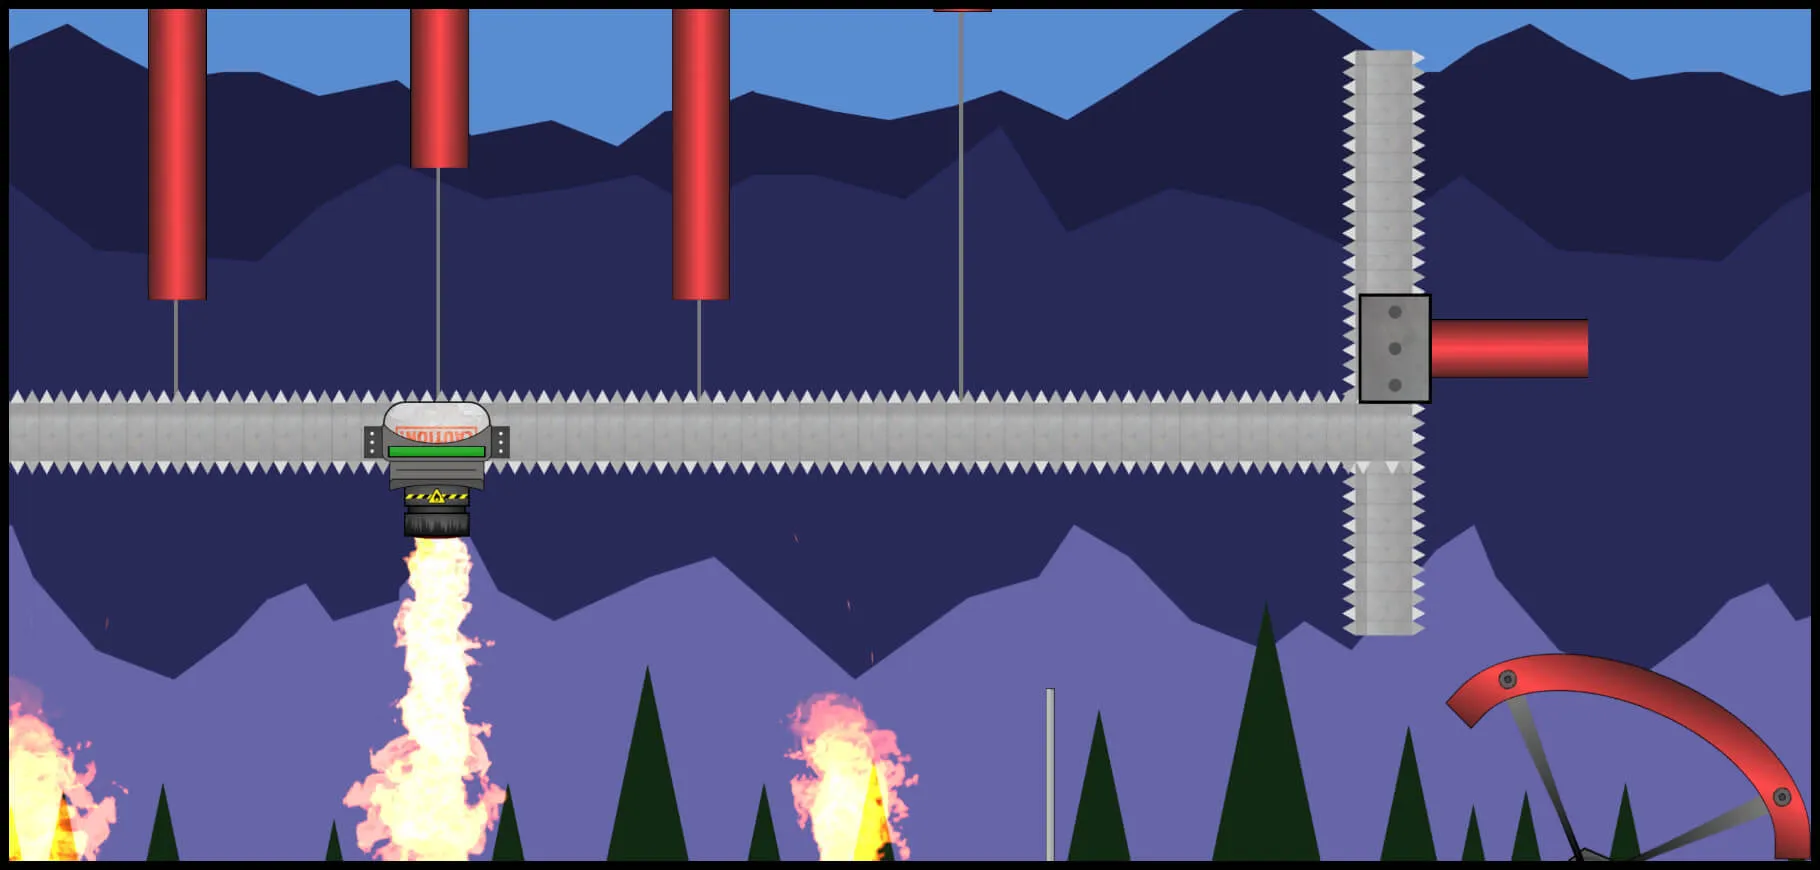 double decker level screenshot from the game reflex runner.